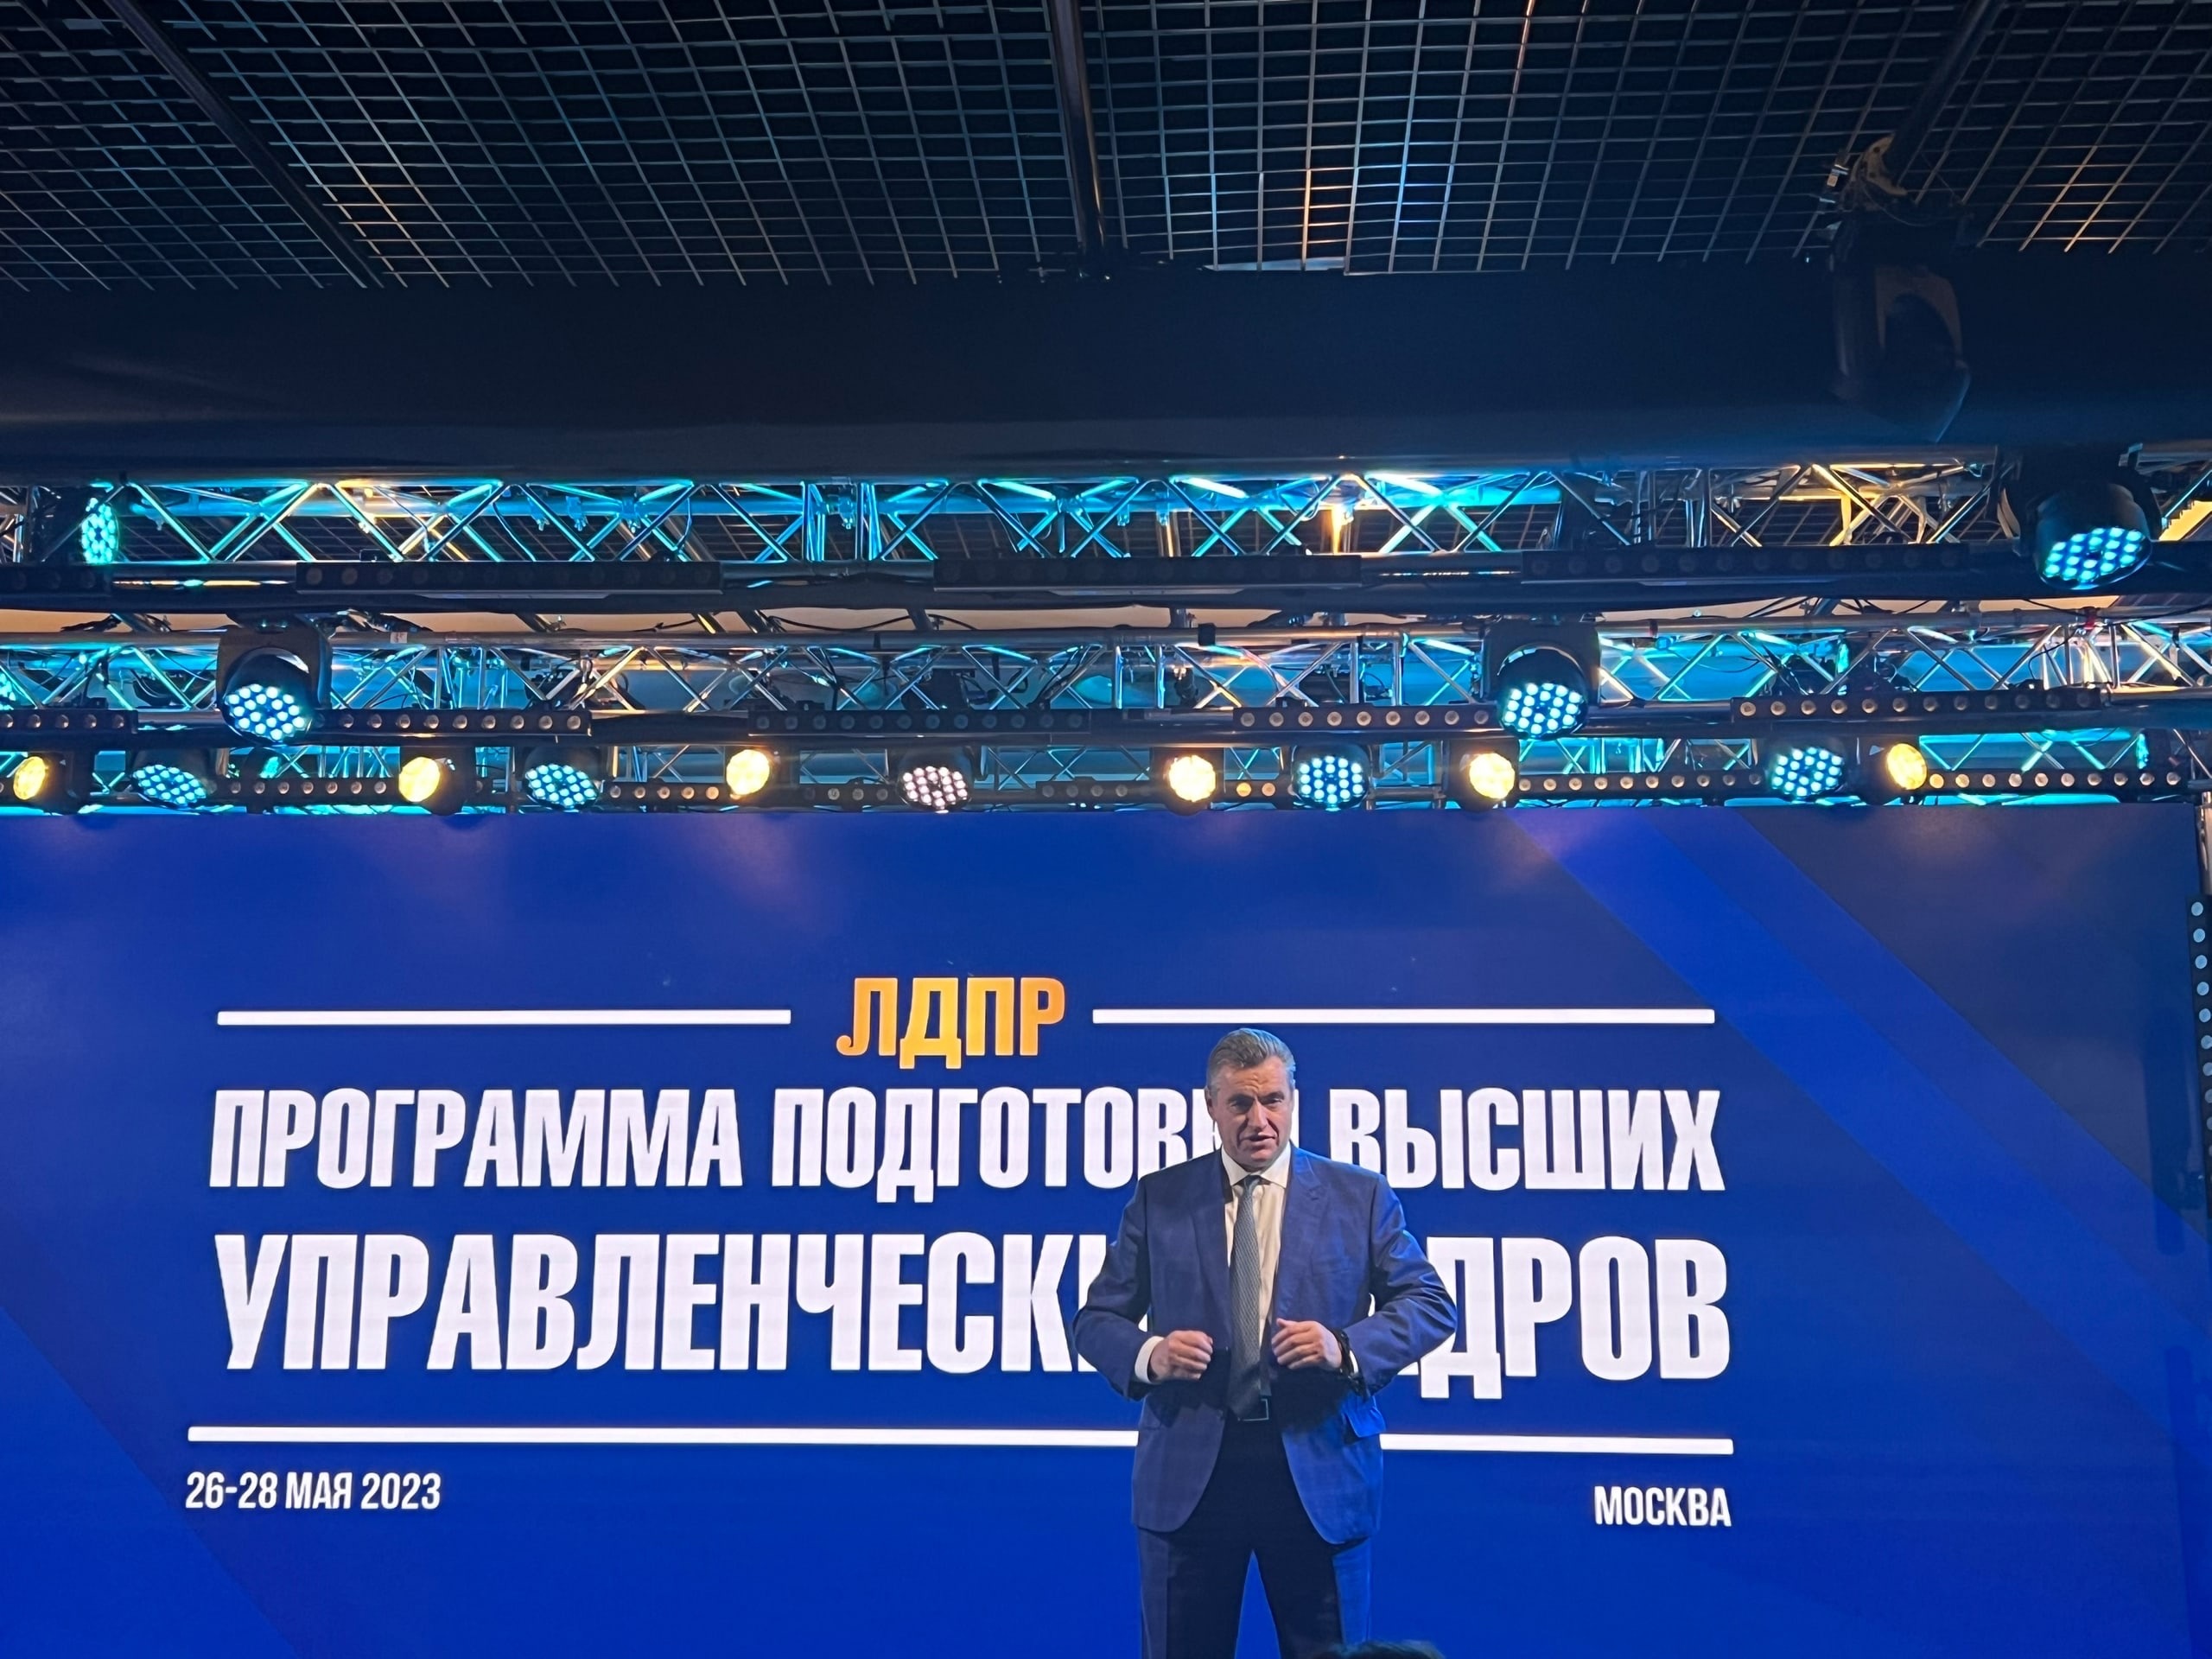 Лидер ЛДПР Слуцкий предложил освободить от налогов граждан с доходом менее 30 тысяч рублей